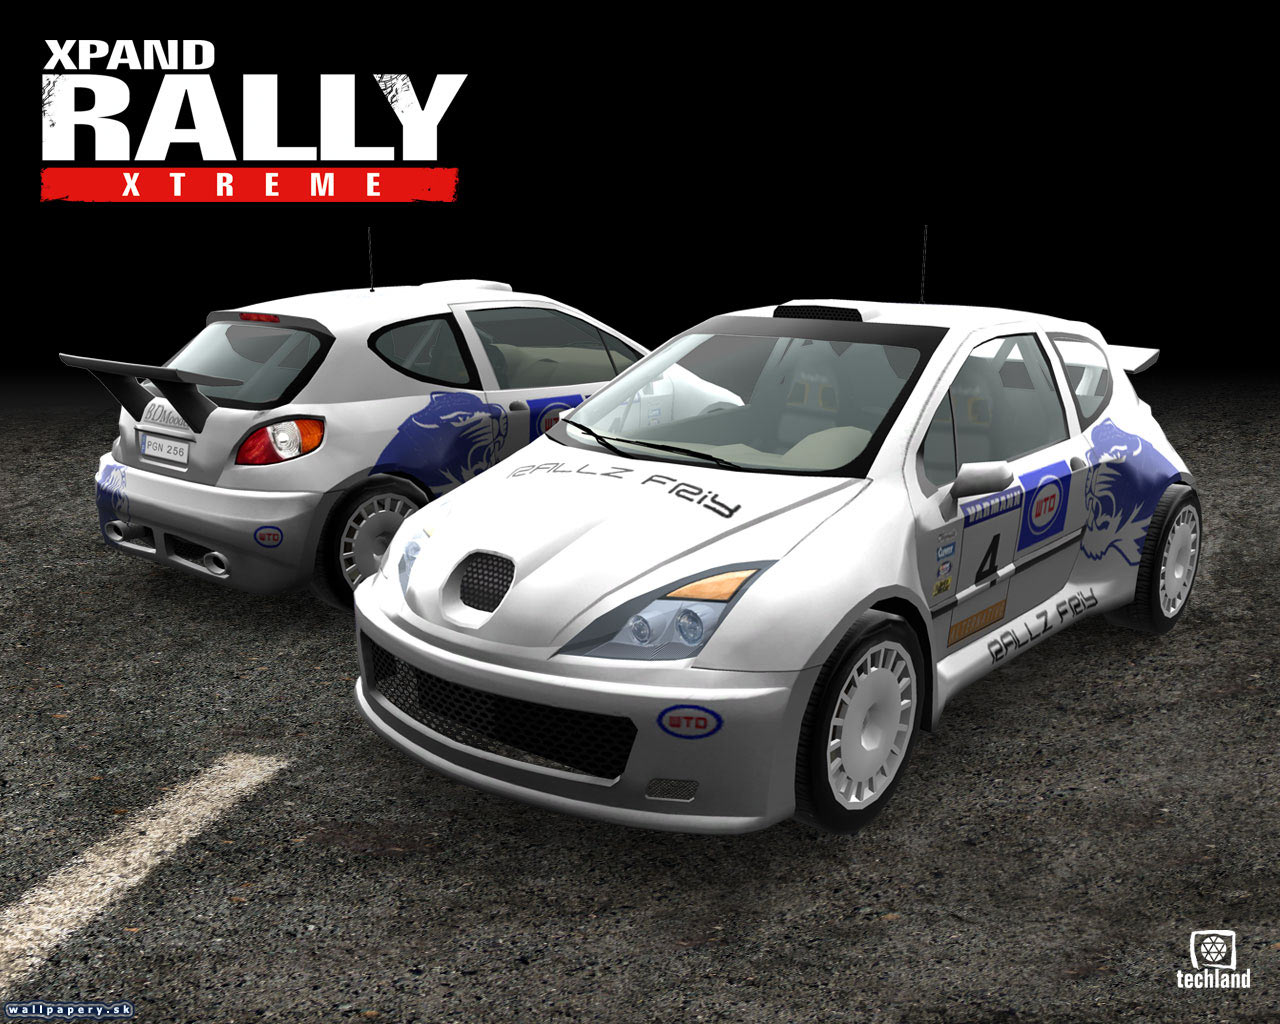 Xpand Rally Xtreme - wallpaper 3